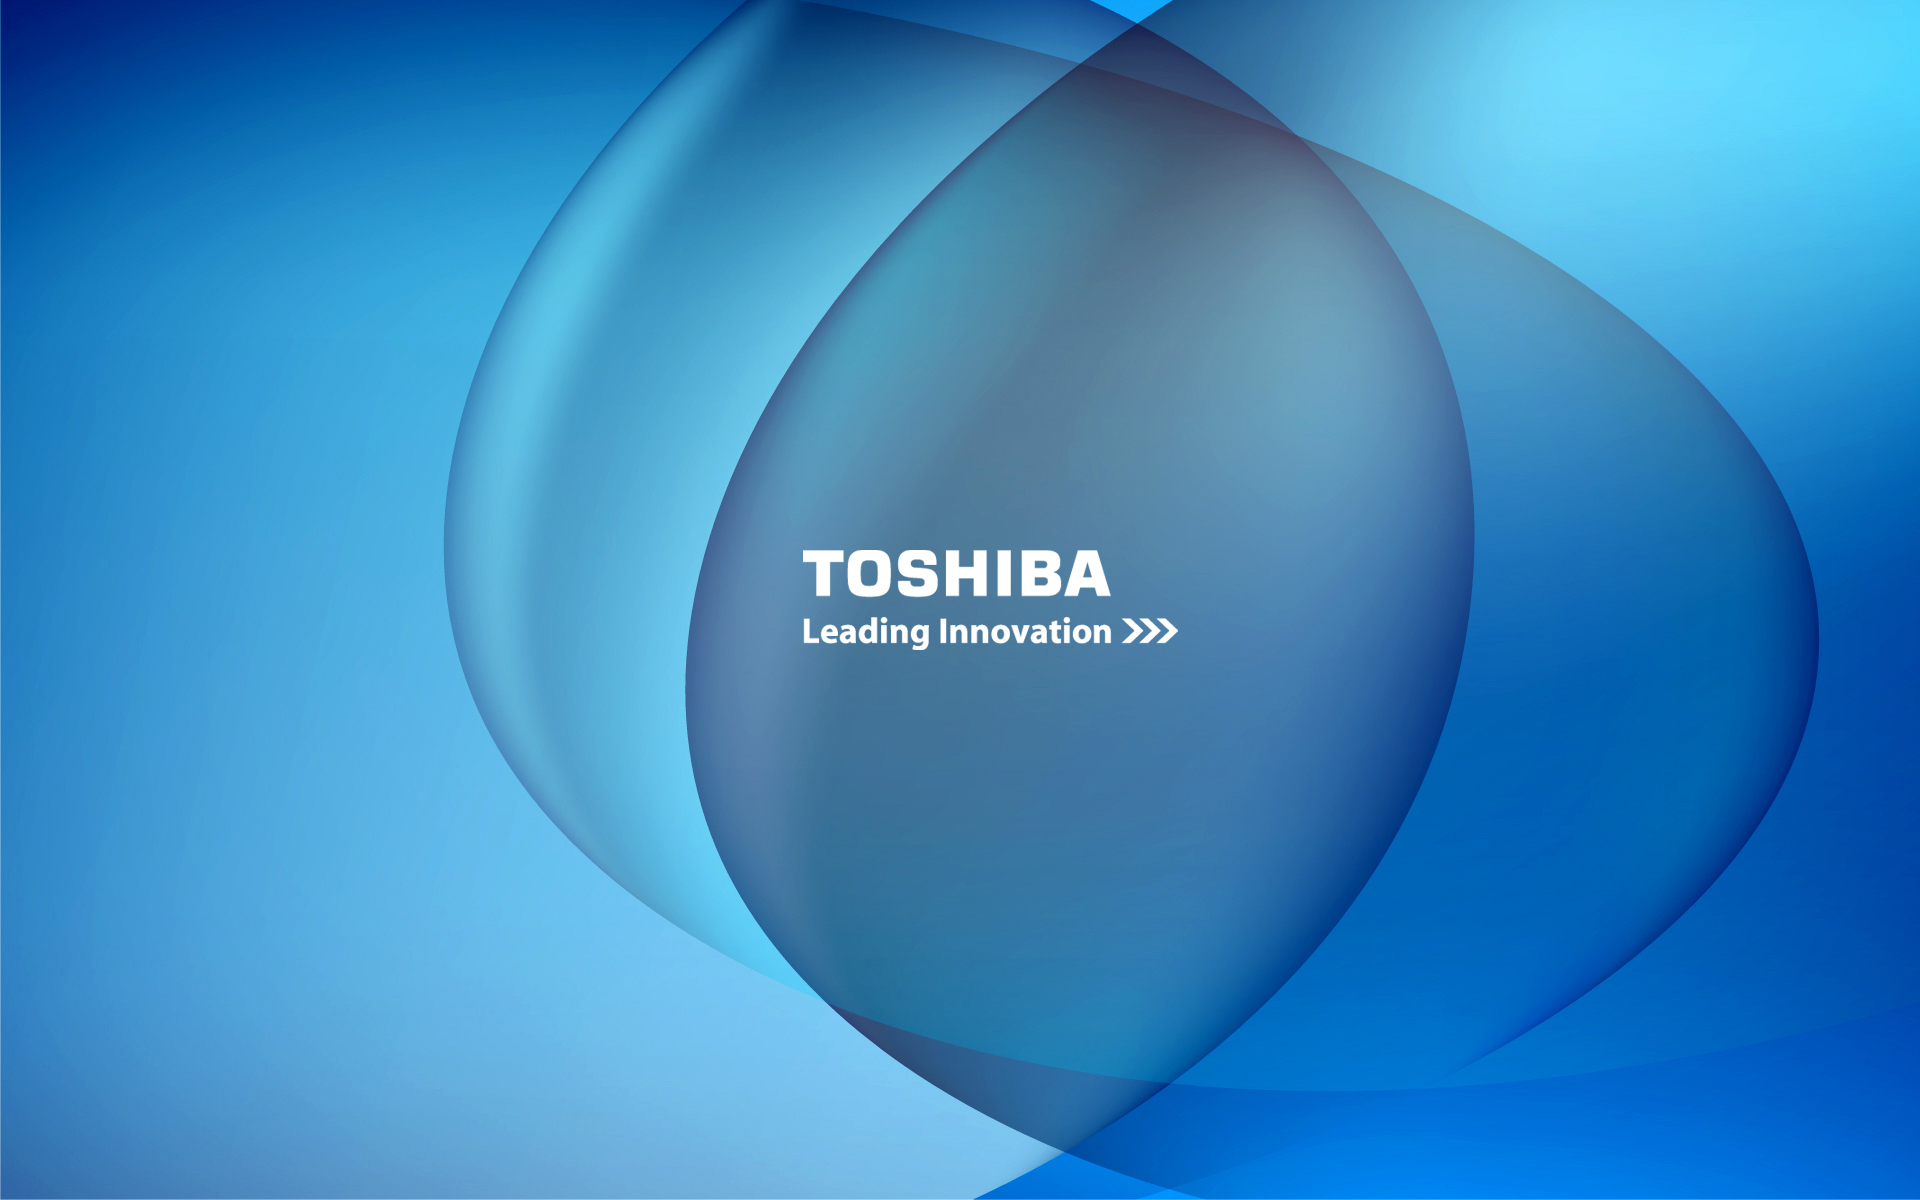 Tải hình nền Toshiba độ phân giải cao: Hãy trải nghiệm sự sắc nét và sống động của các hình nền Toshiba độ phân giải cao. Sẽ không có gì tuyệt vời hơn khi bạn được tràn đầy màu sắc và sự hiện diện trên màn hình máy tính của mình. Hãy truy cập ngay để tải về những bức hình nền đẹp nhất và cập nhật cho máy tính của mình một cách nhanh chóng và dễ dàng.